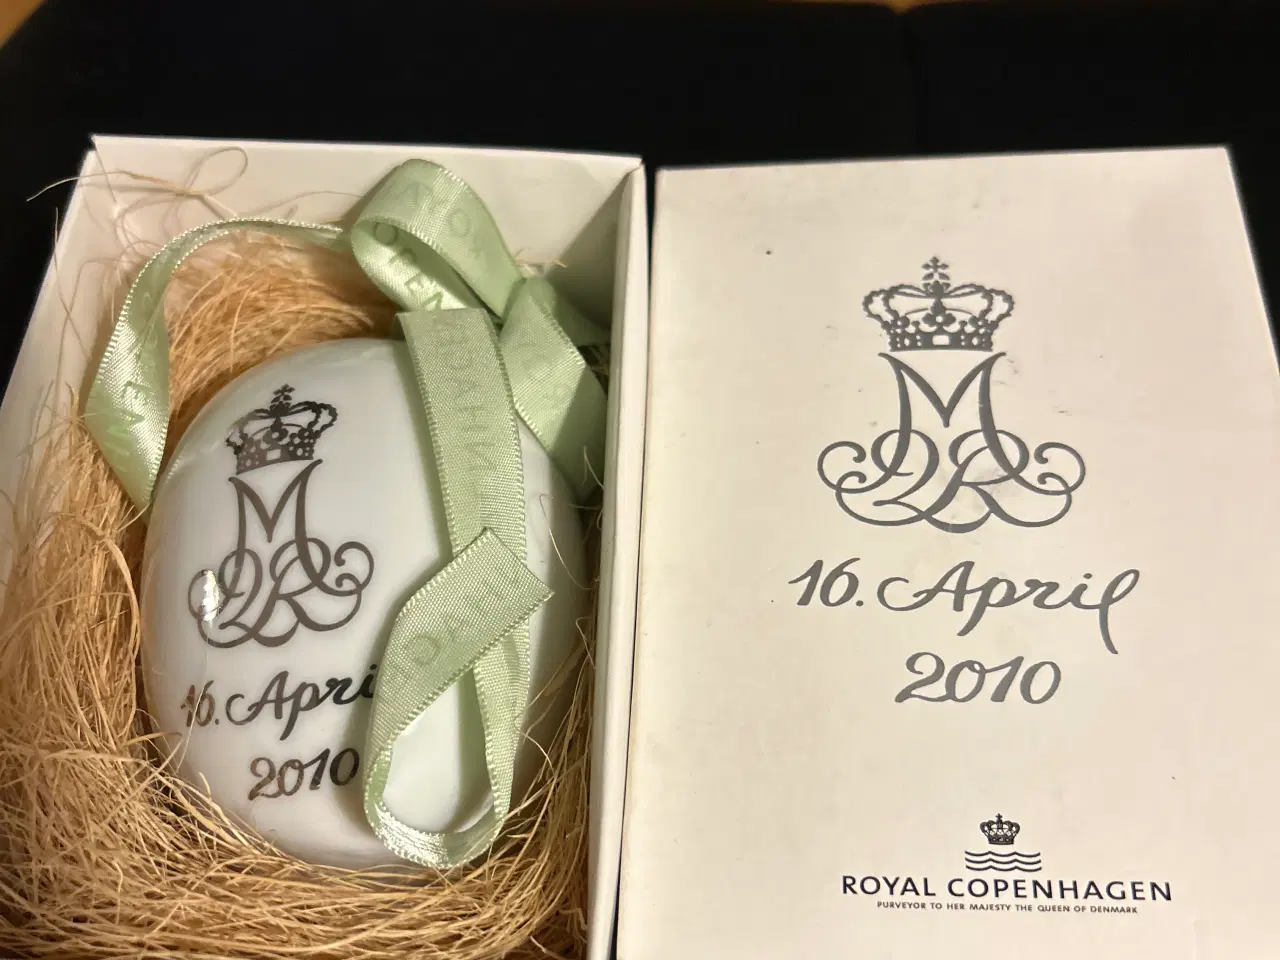 Billede 2 - Royal gåseæg 2010 jubilæumsæg til dronning margrer